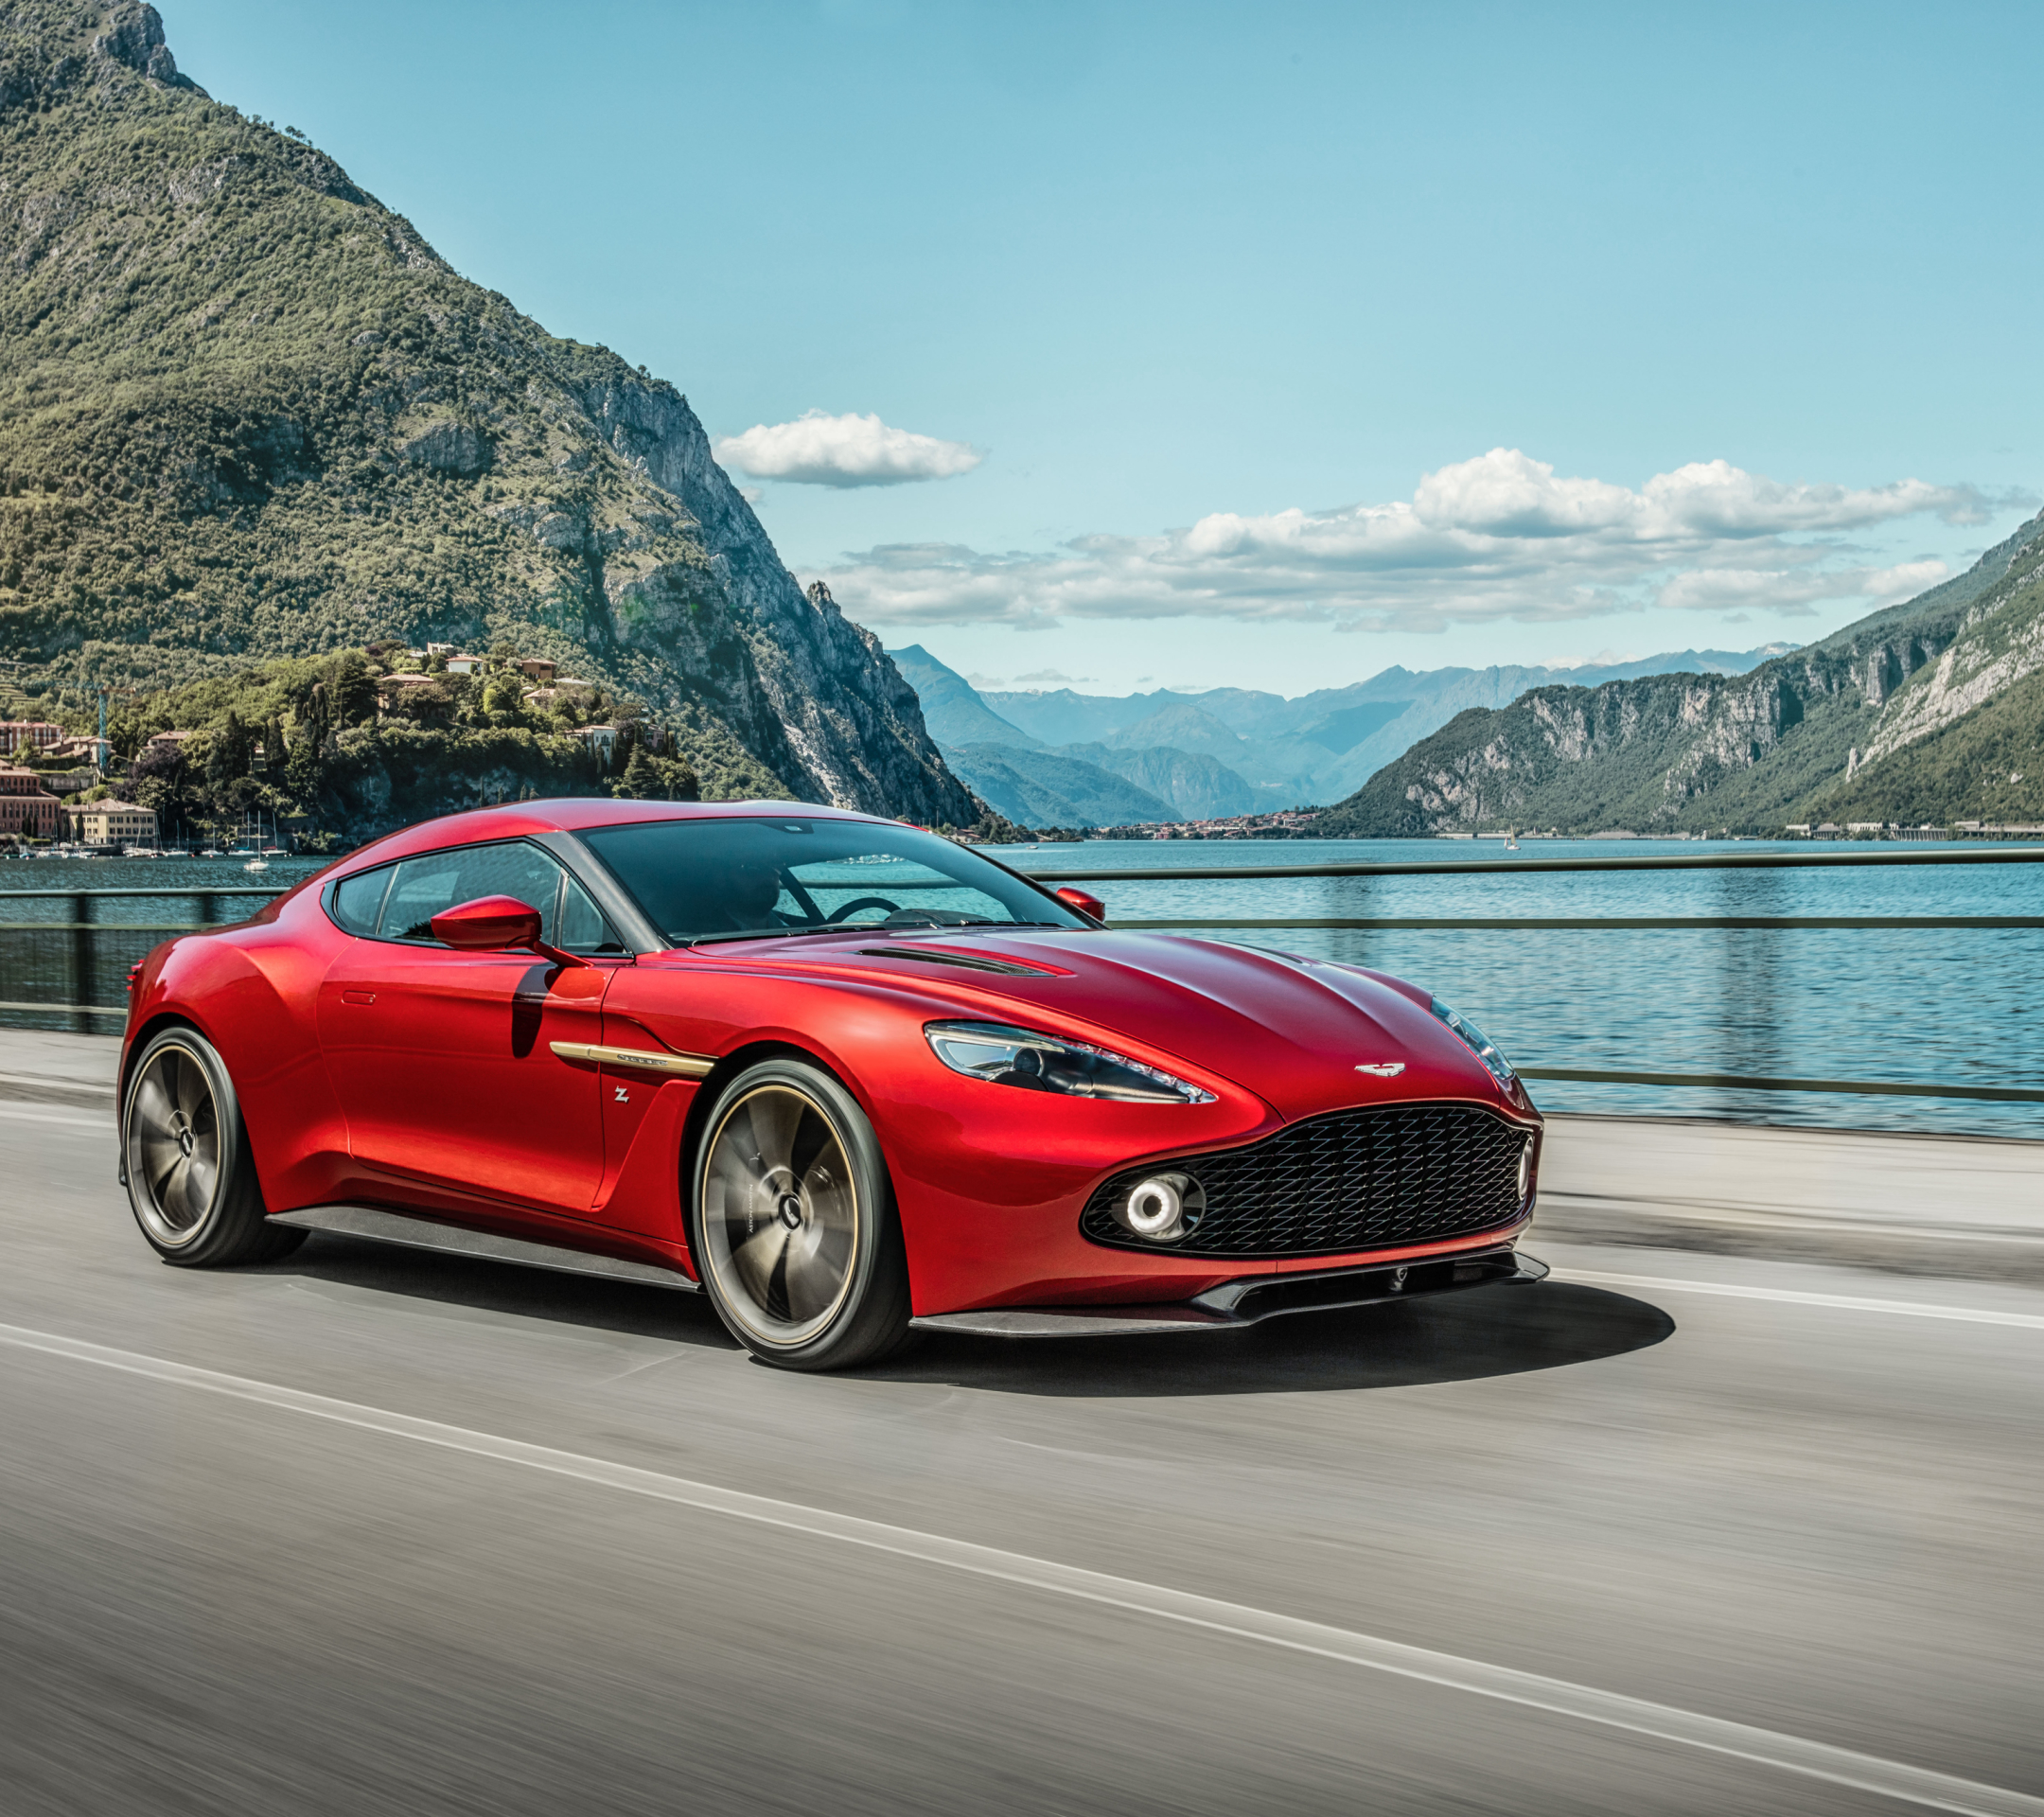 Descarga gratuita de fondo de pantalla para móvil de Aston Martin, Coche, Gran Turismo, Vehículo, Vehículos, Aston Martin Vanquish.